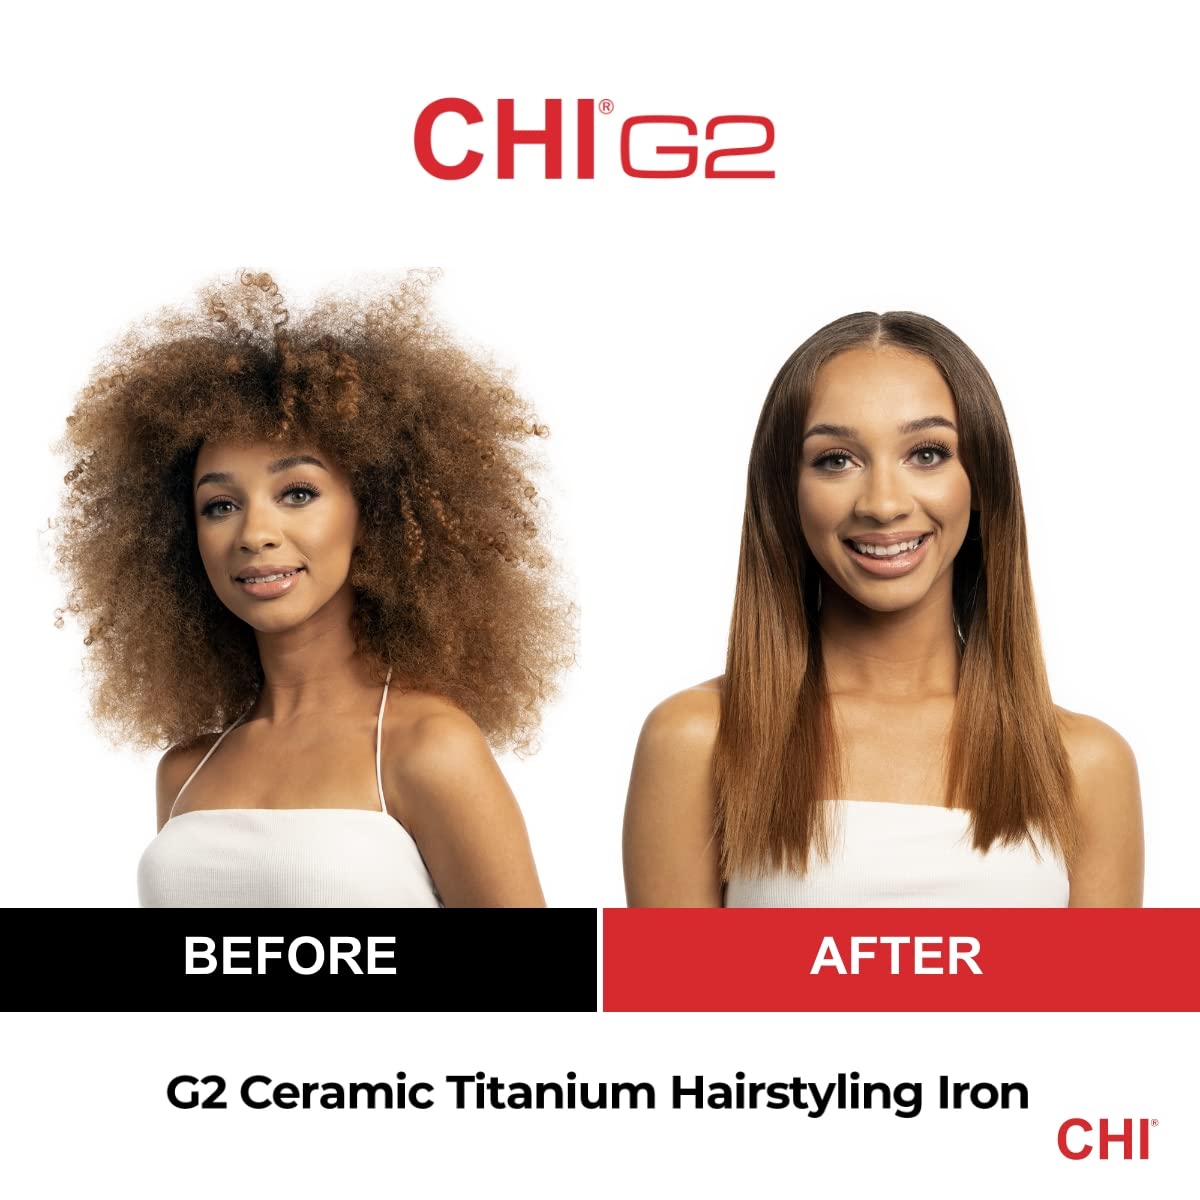 Plancha para cabello, Chi G2de cerámica y titanio, 1.25pulgadas, 1.4libras